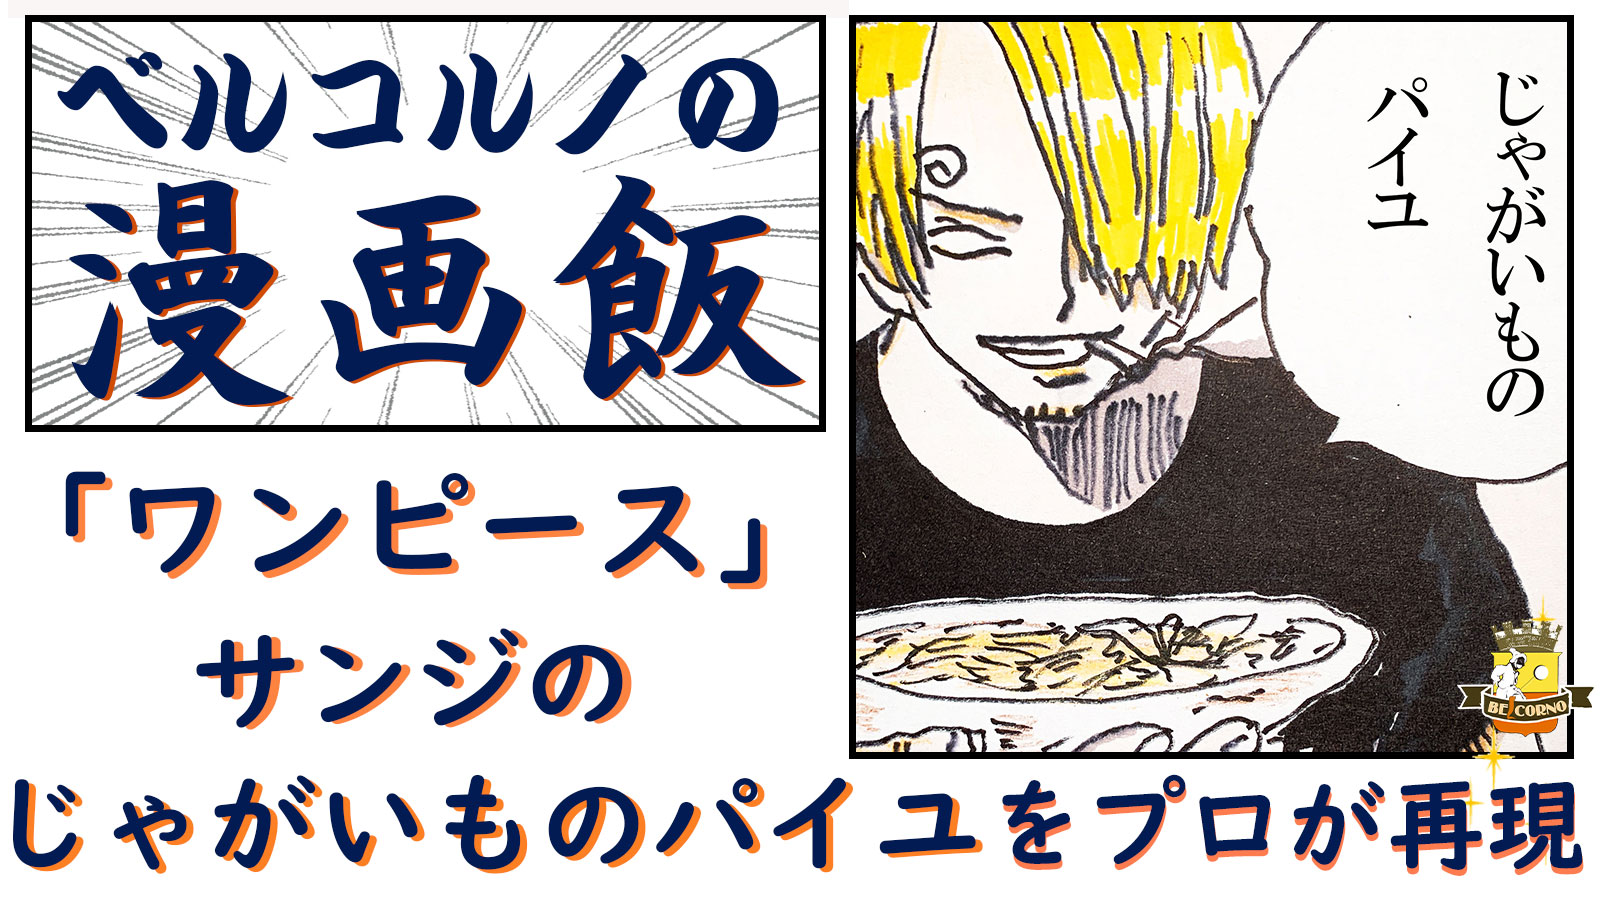 ワンピース サンジの じゃがいものパイユ を プロが再現 漫画飯 Belcorno Yahoo Japan クリエイターズプログラム